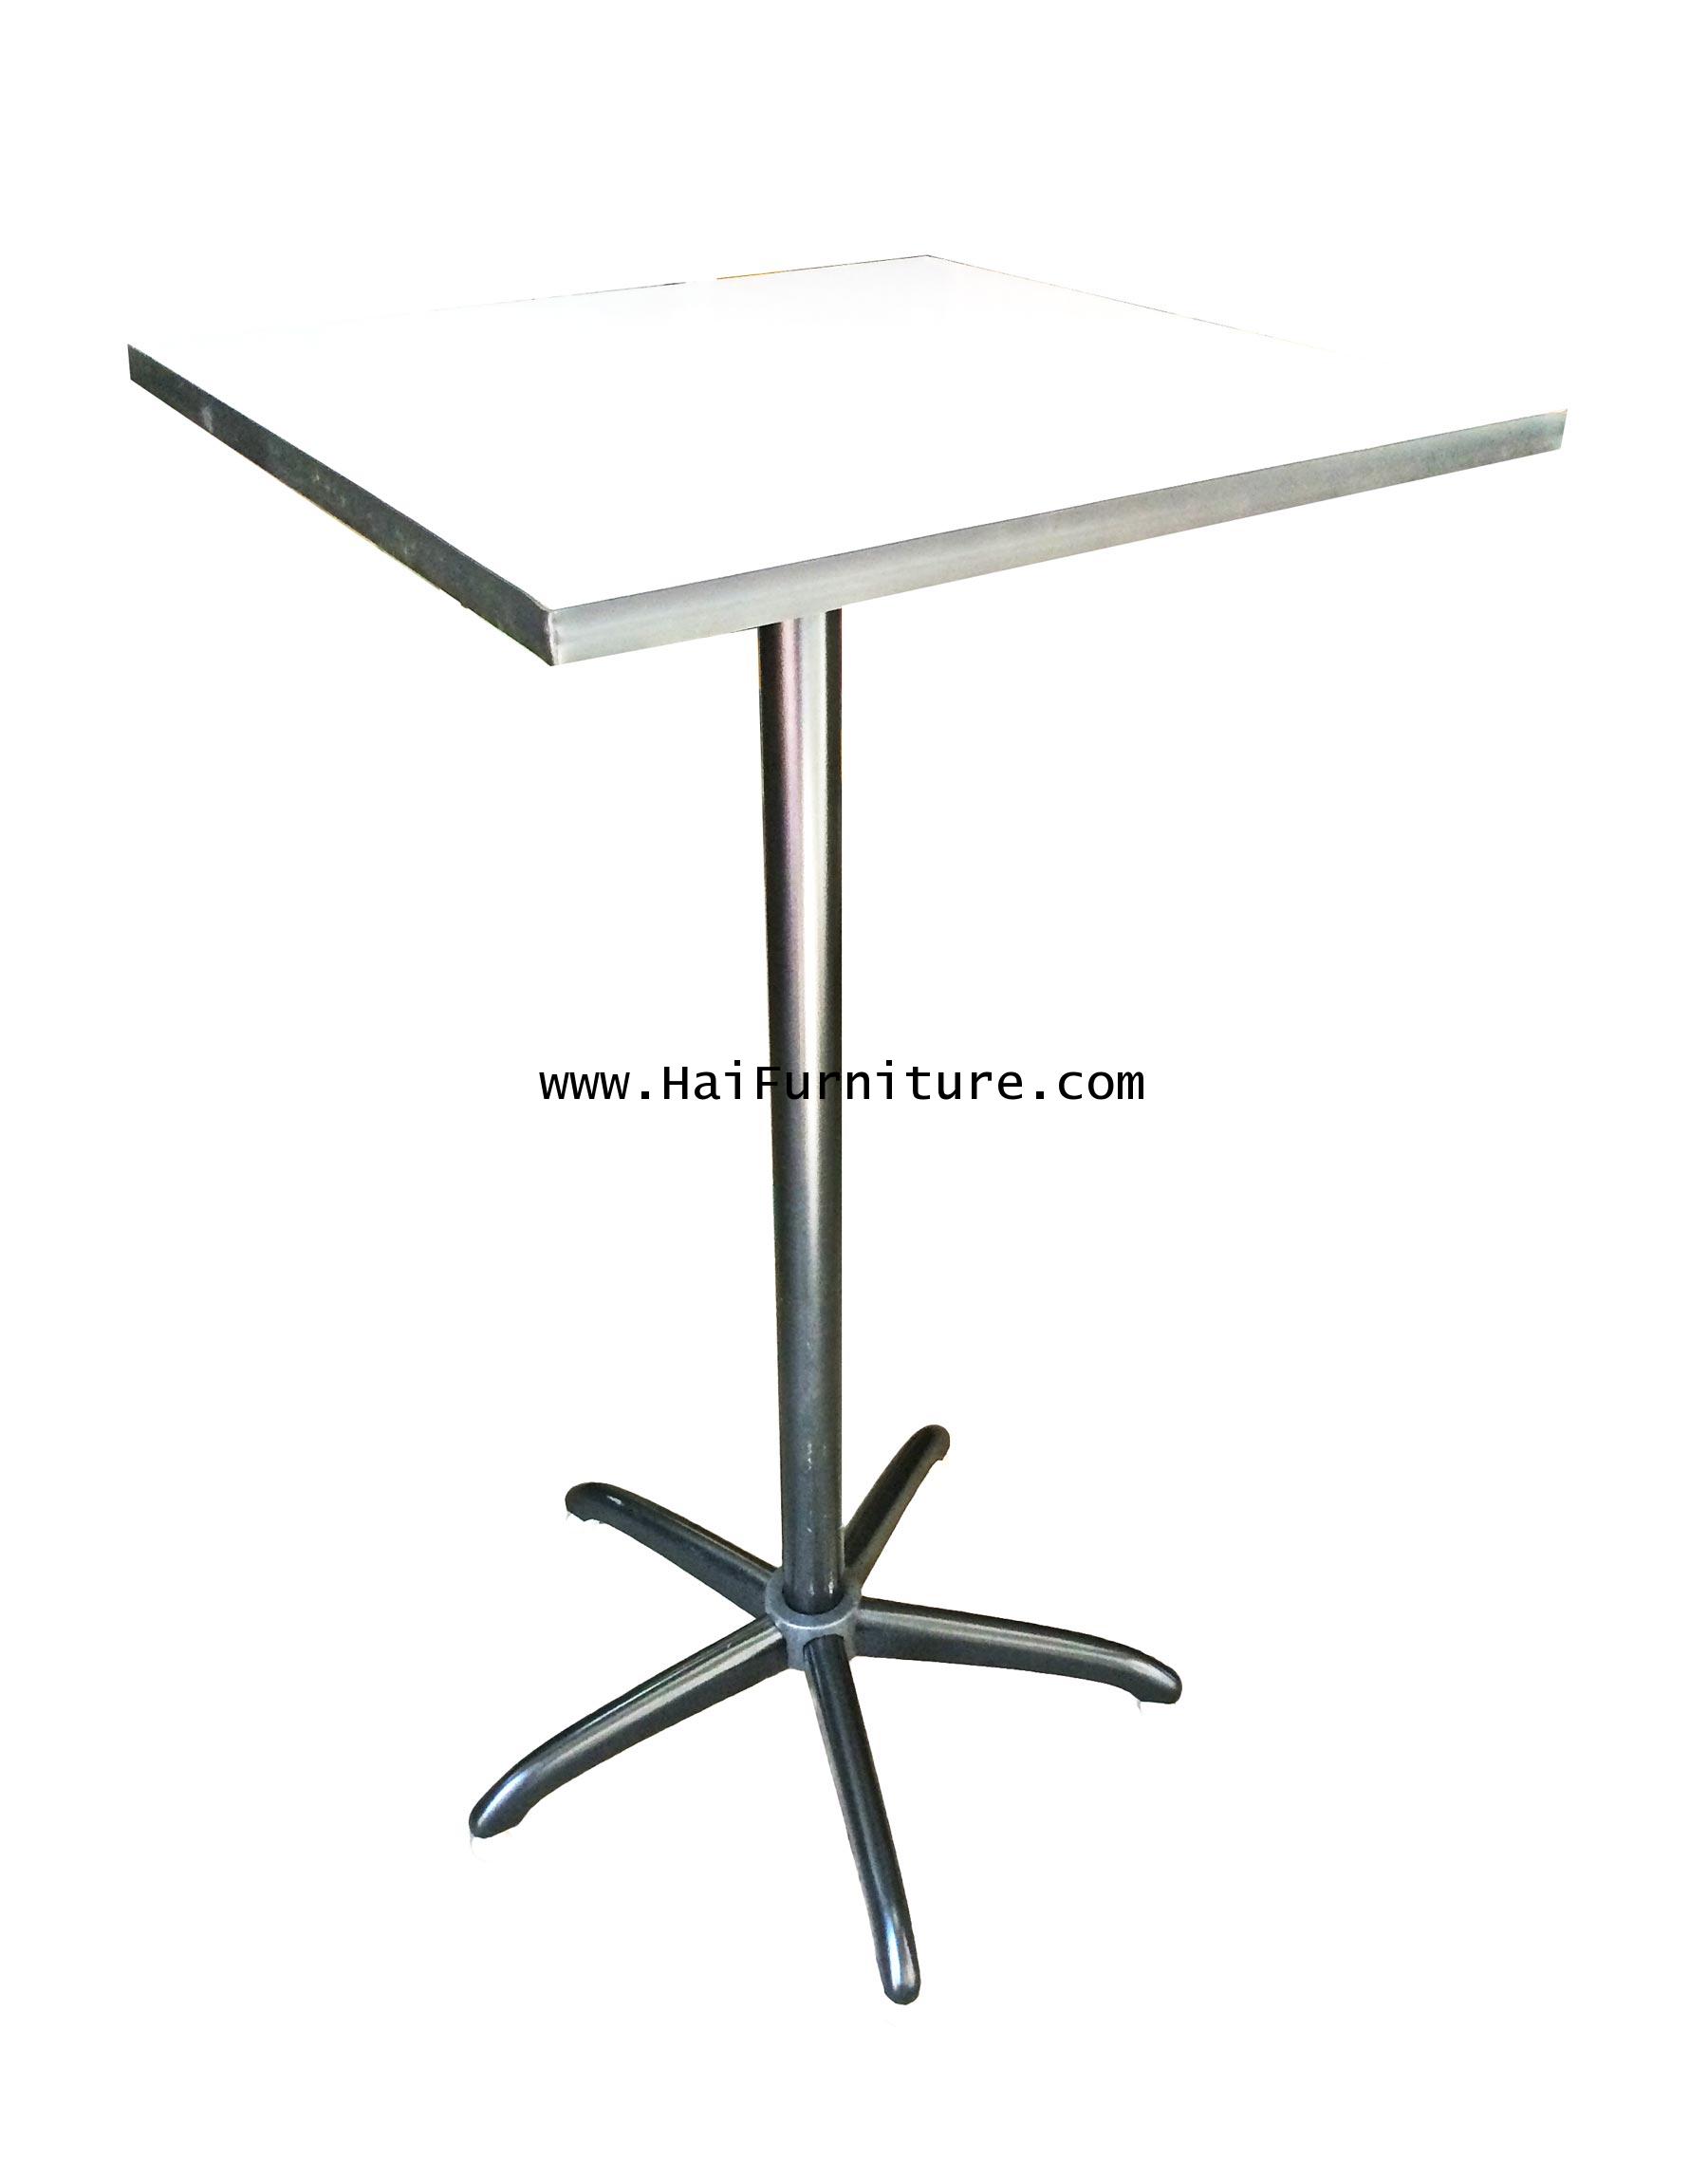 โต๊ะบาร์สี่เหลียมจตุรัส 60*60*110 ซม.